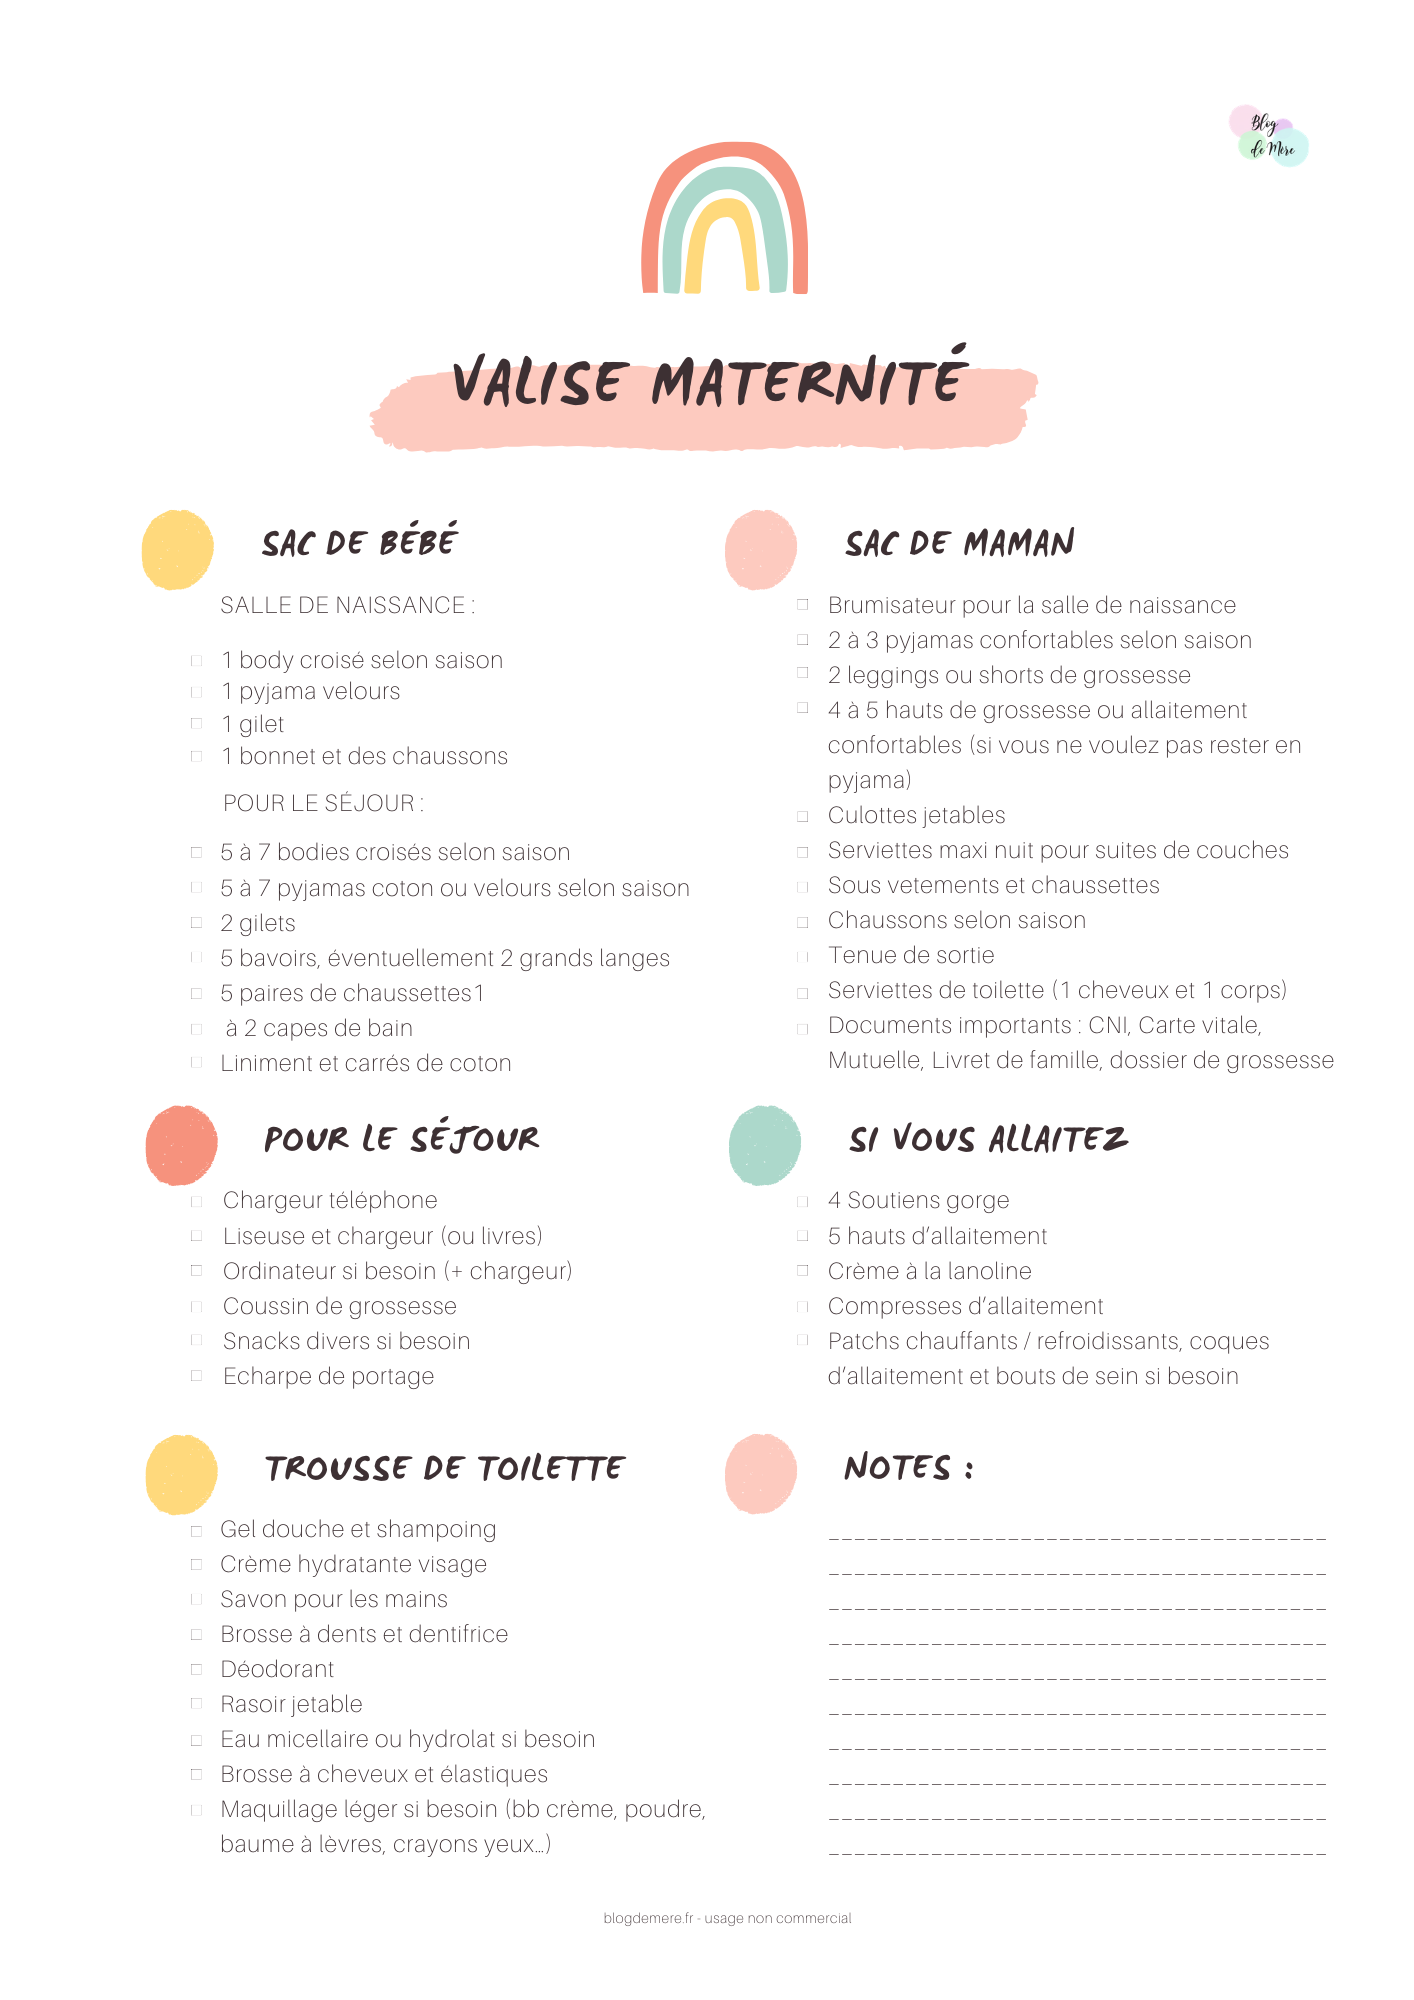 https://www.blogdemere.fr/liste-valise-maternite-2/